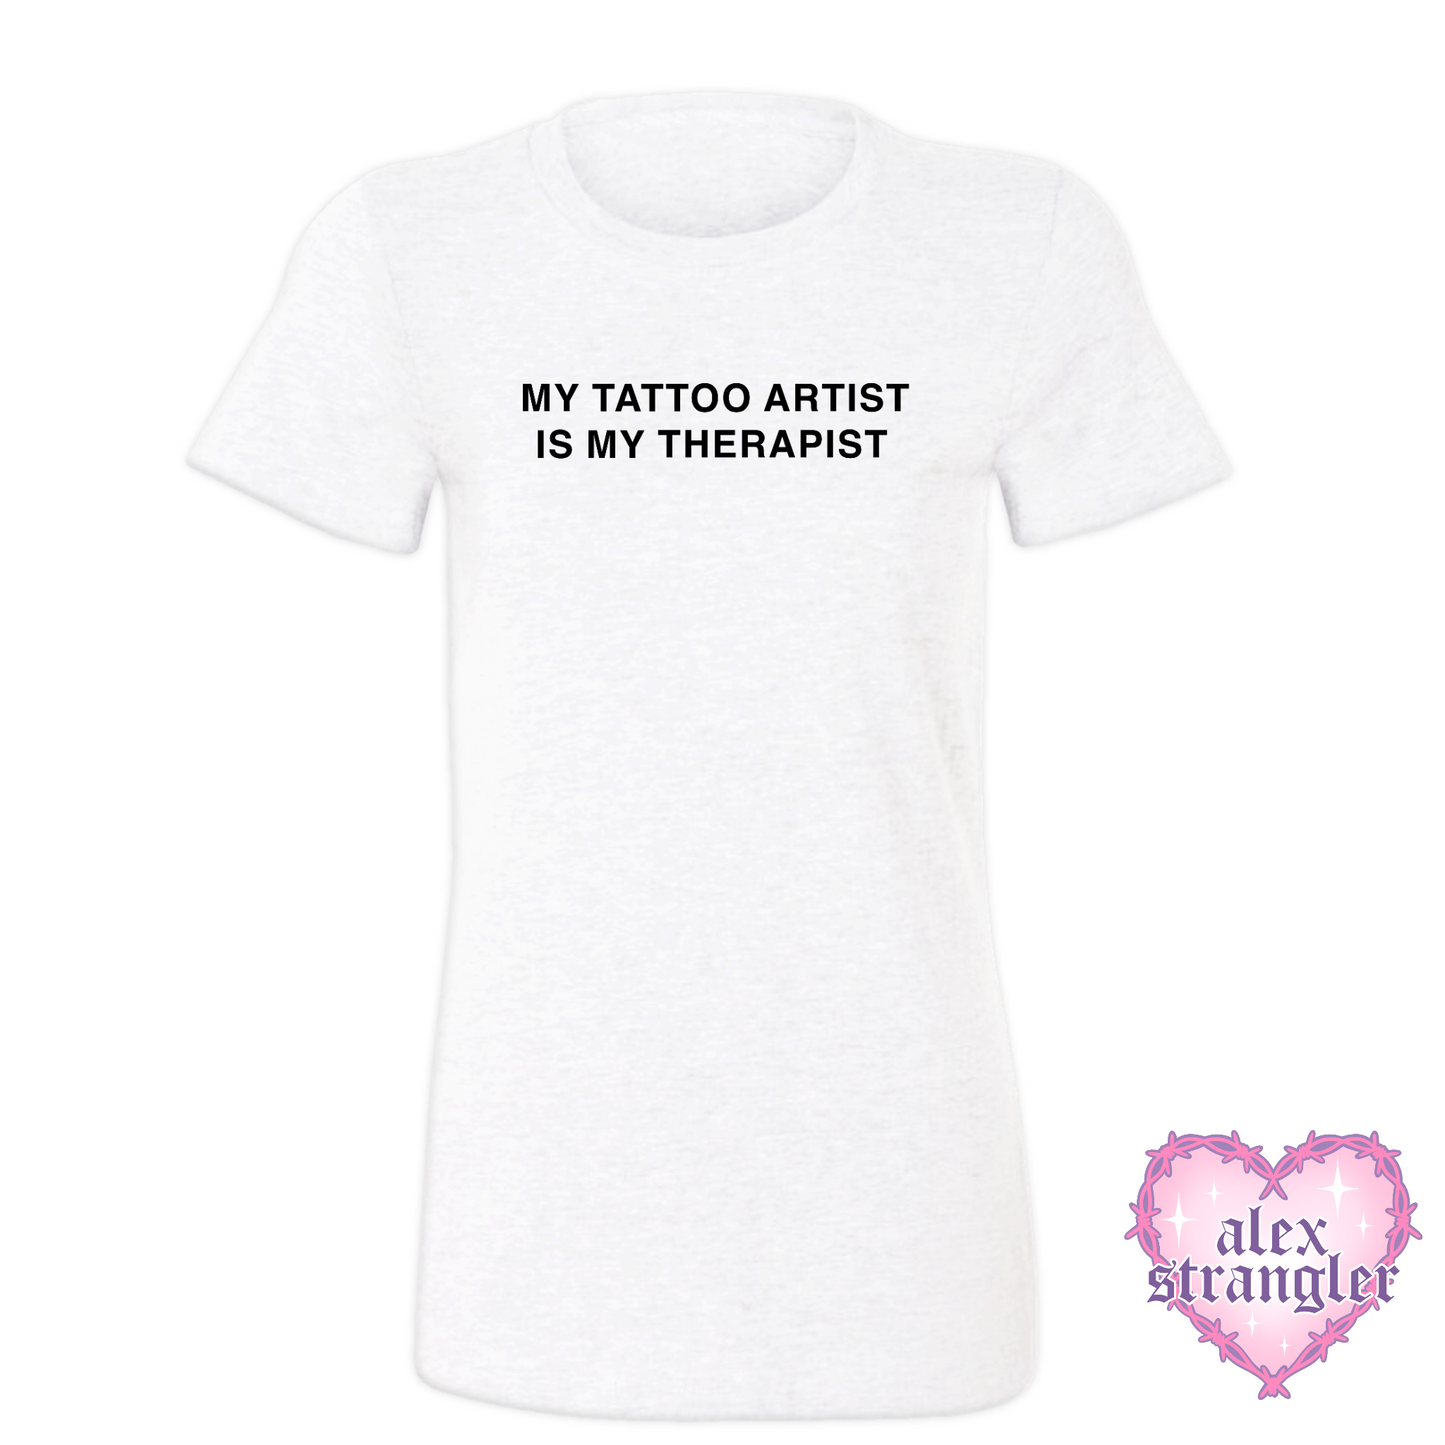 My Tattoo Artist Is My Therapist - Women's Tee